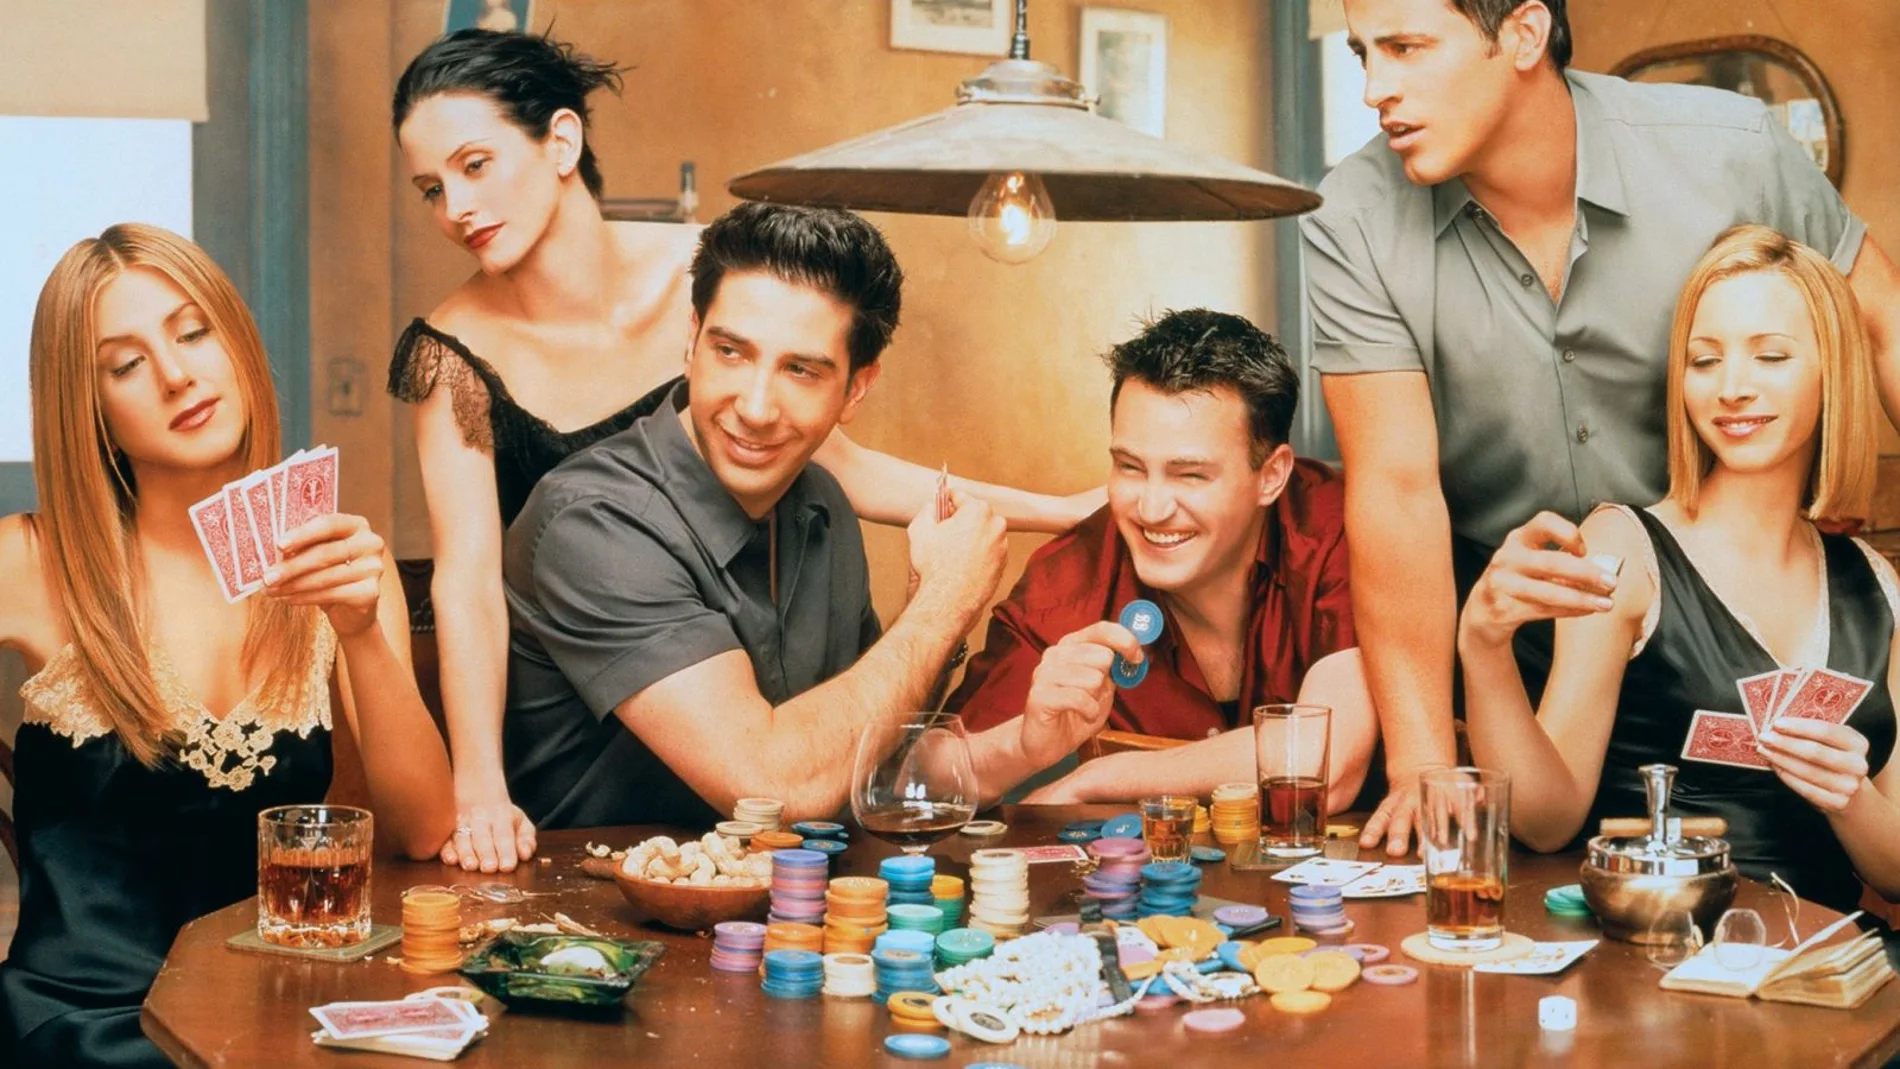 Un fotograma de la serie “Friends”